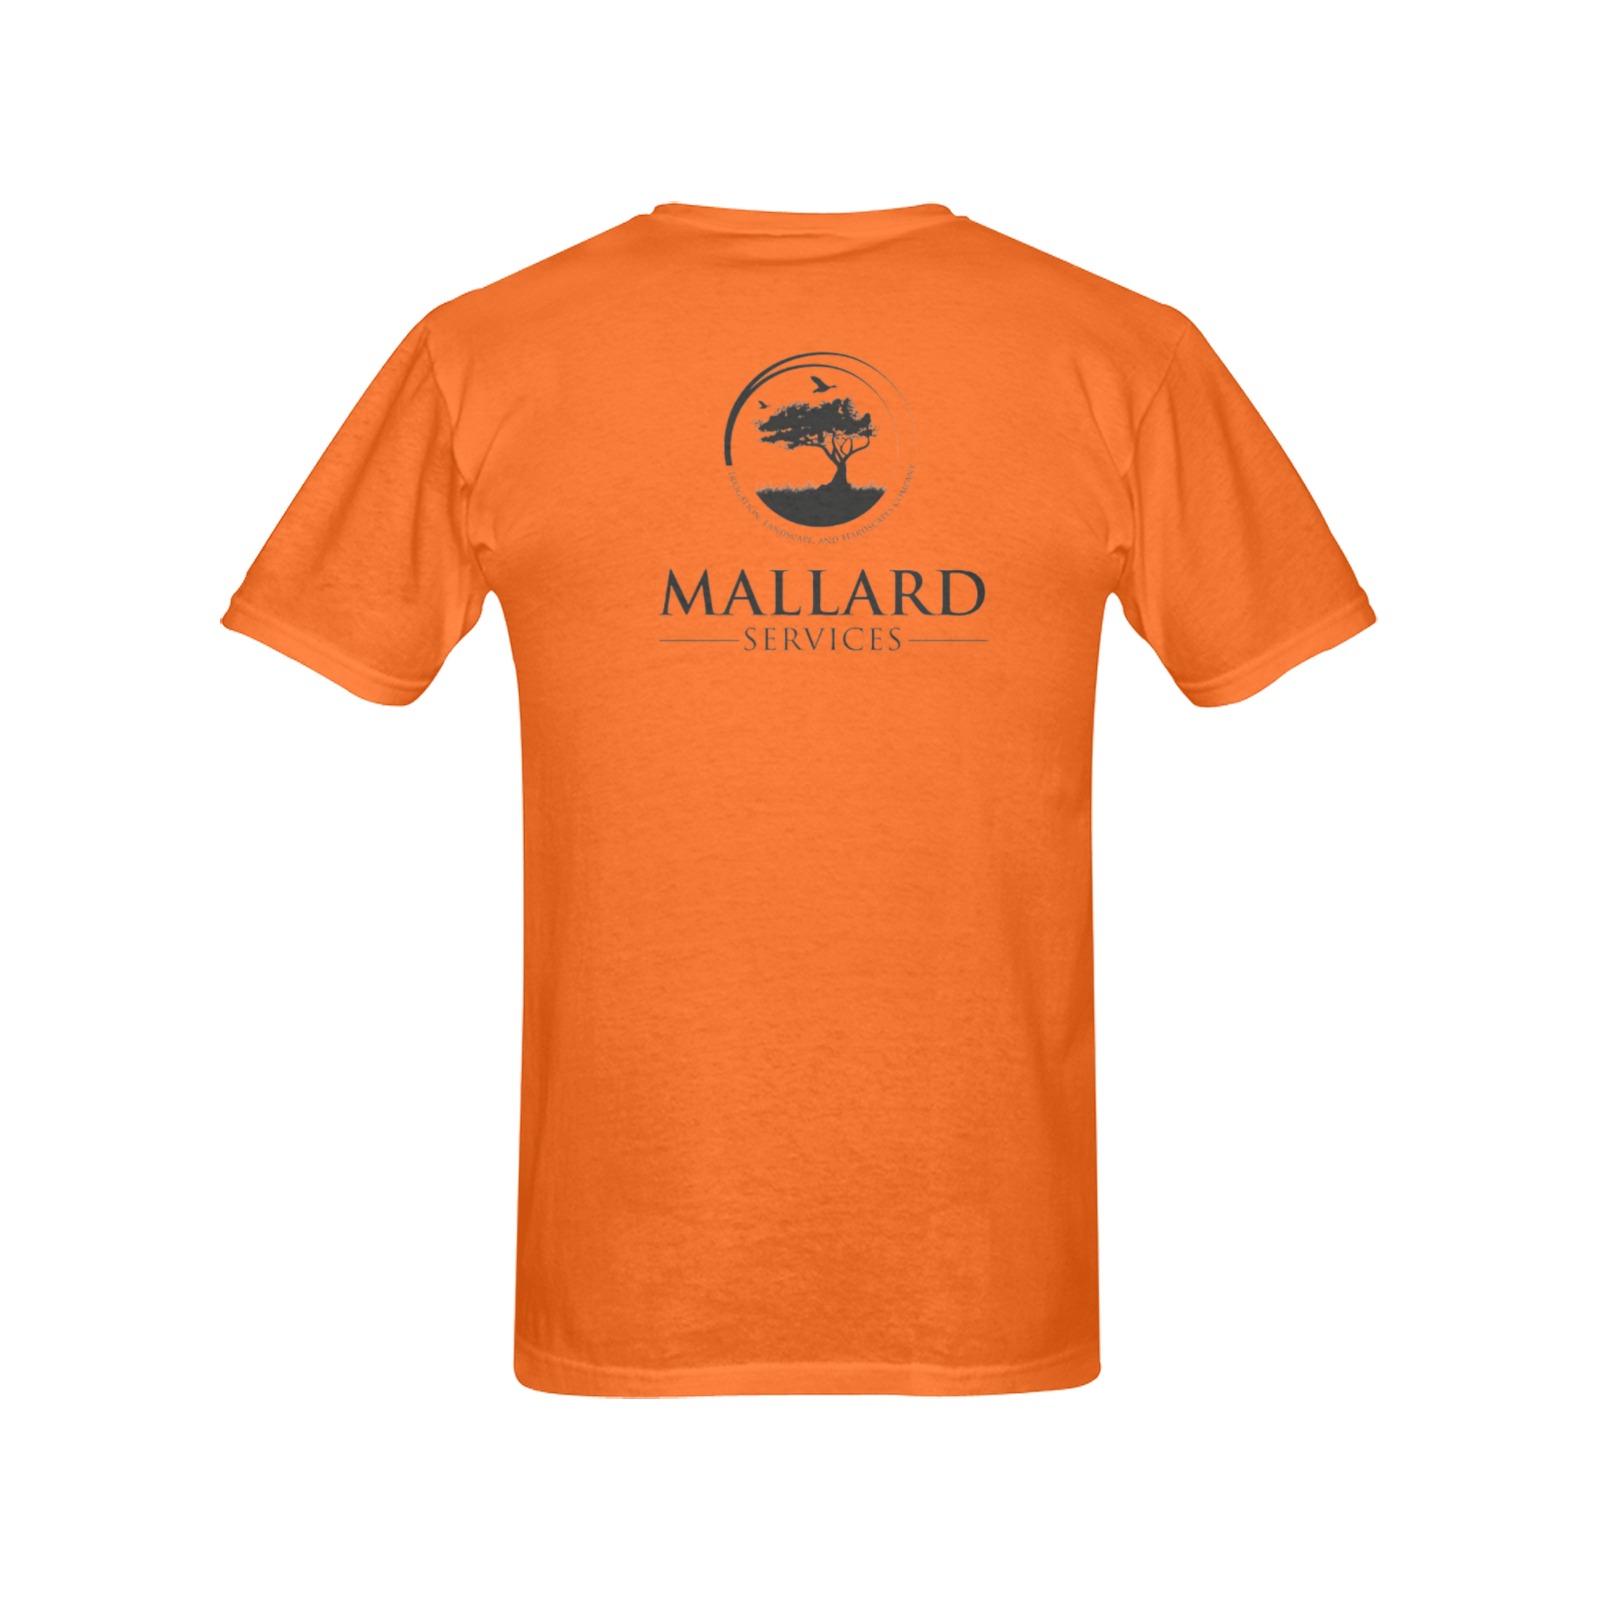 Mallard transparent orange Men's T-Shirt in USA Size (Two Sides Printing)